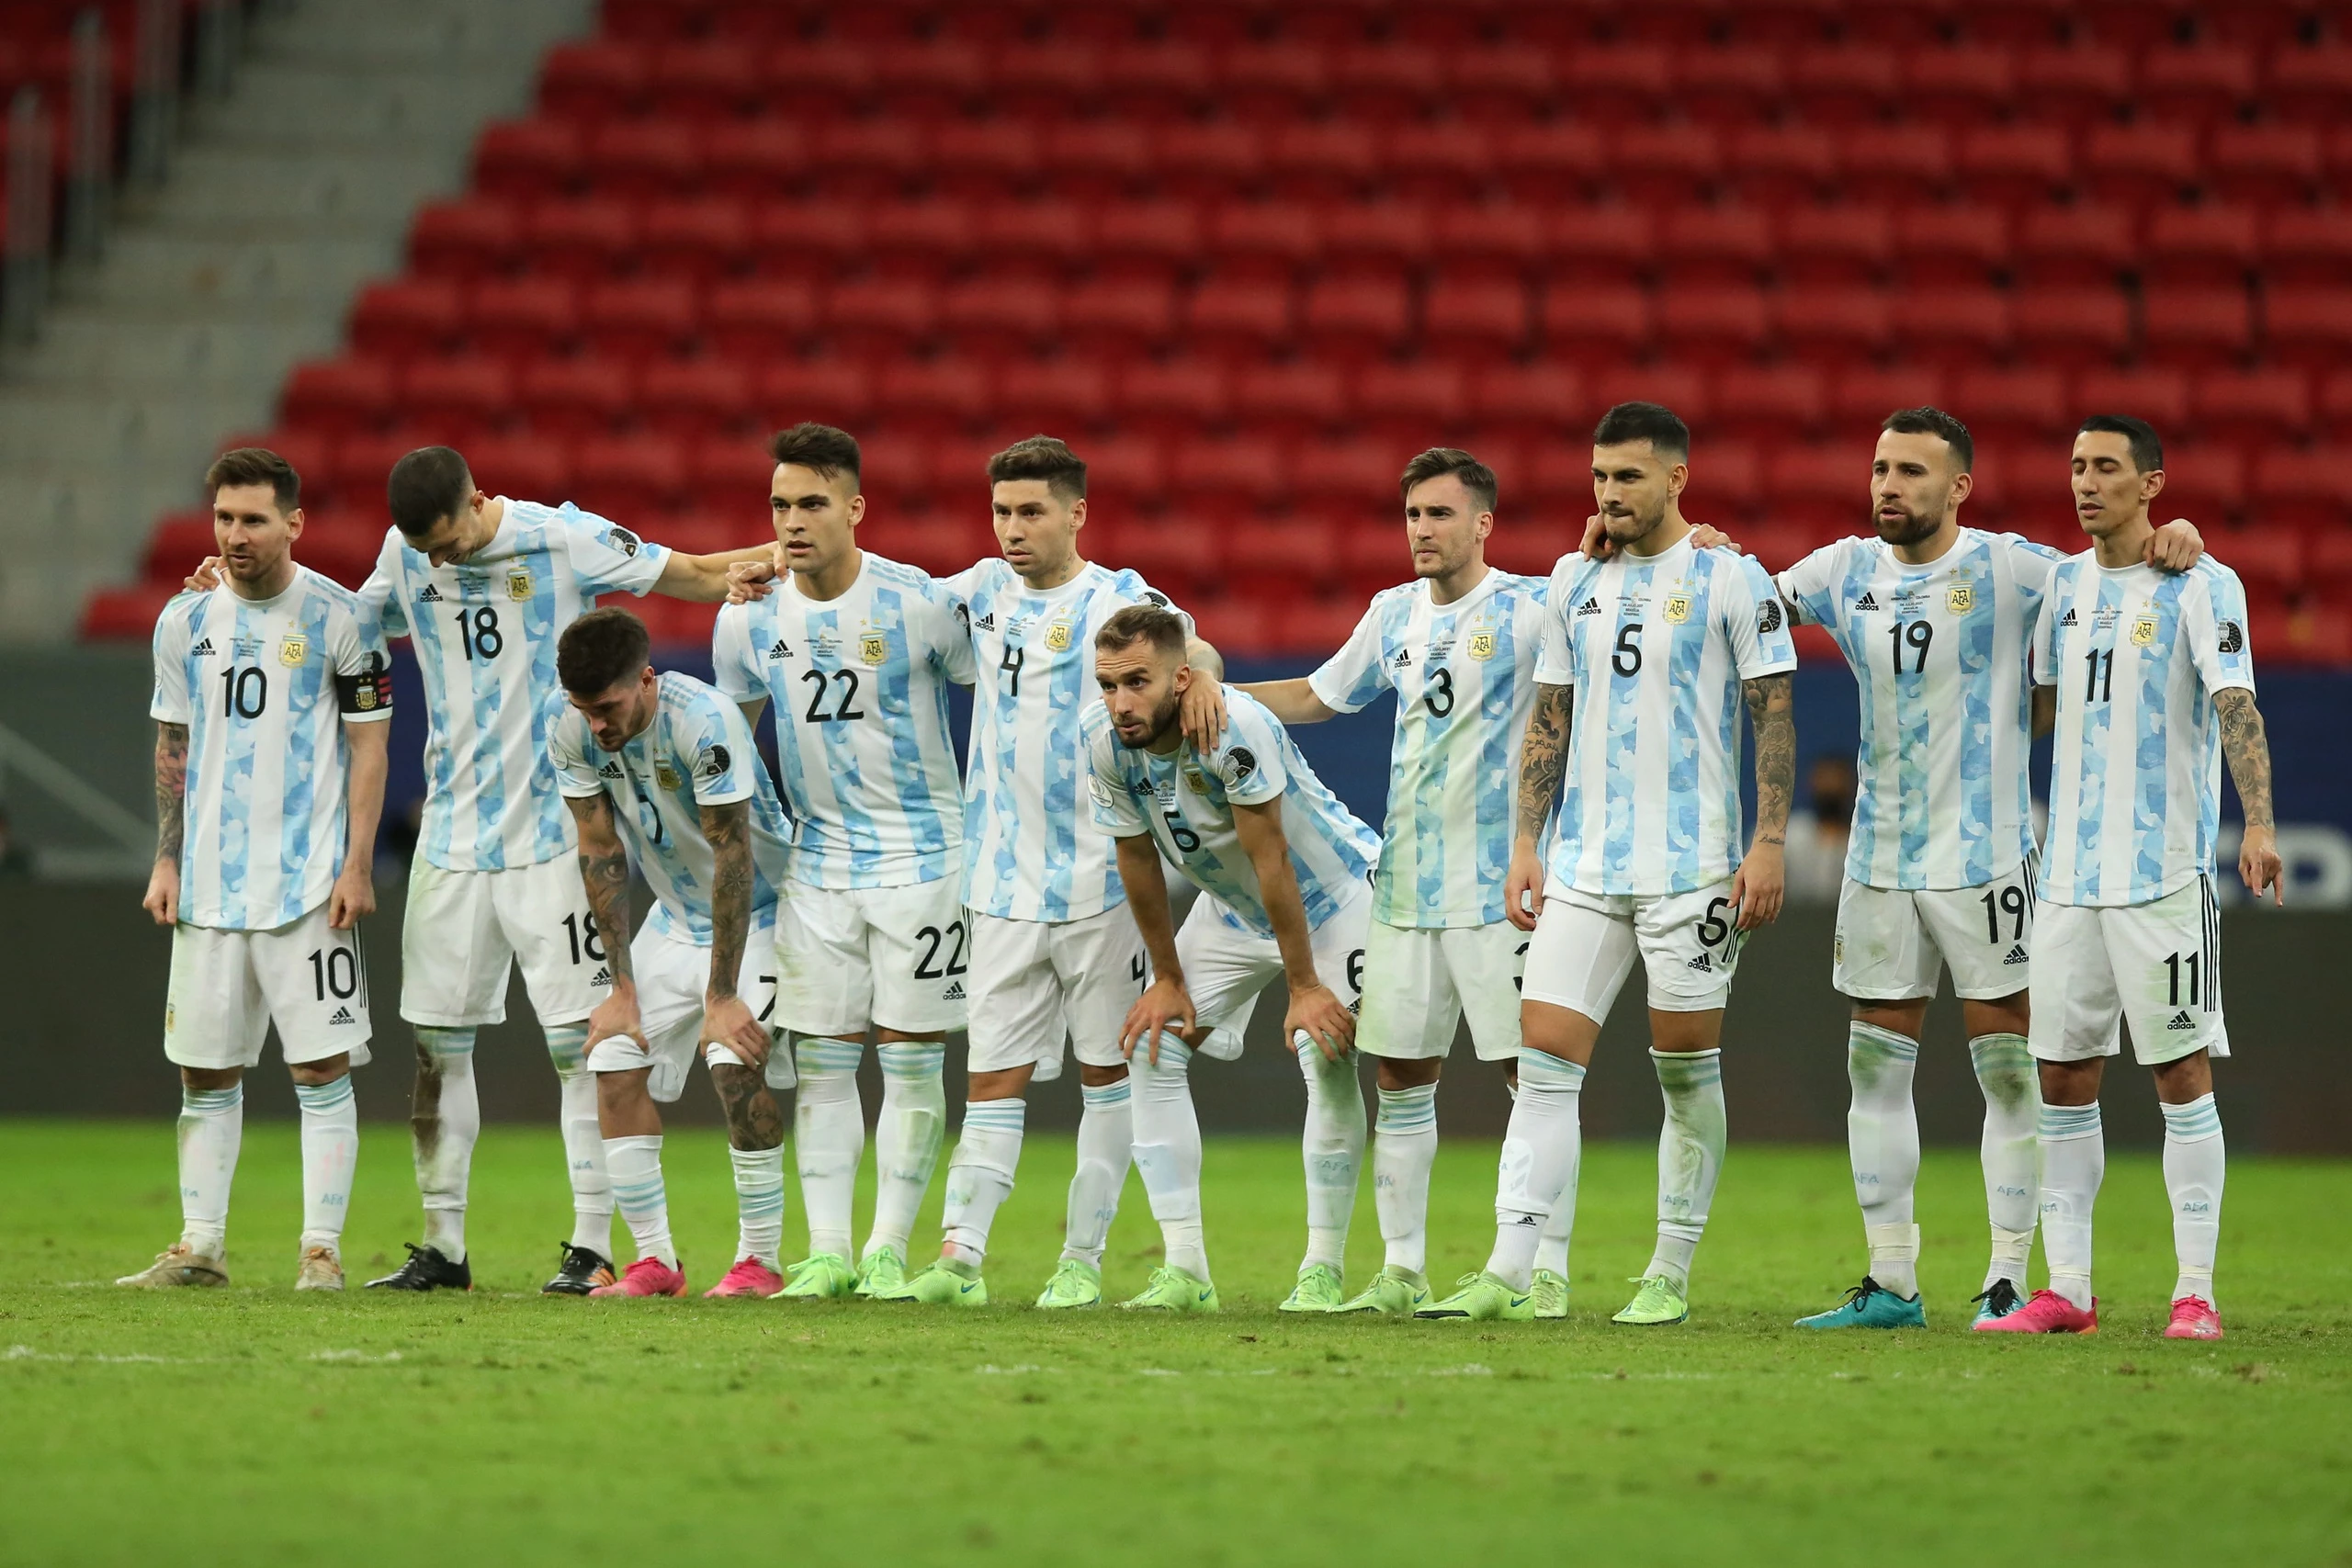 Độc lạ: Copa America không đấu hiệp phụ từ vòng knock-out, chỉ có ở trận chung kết